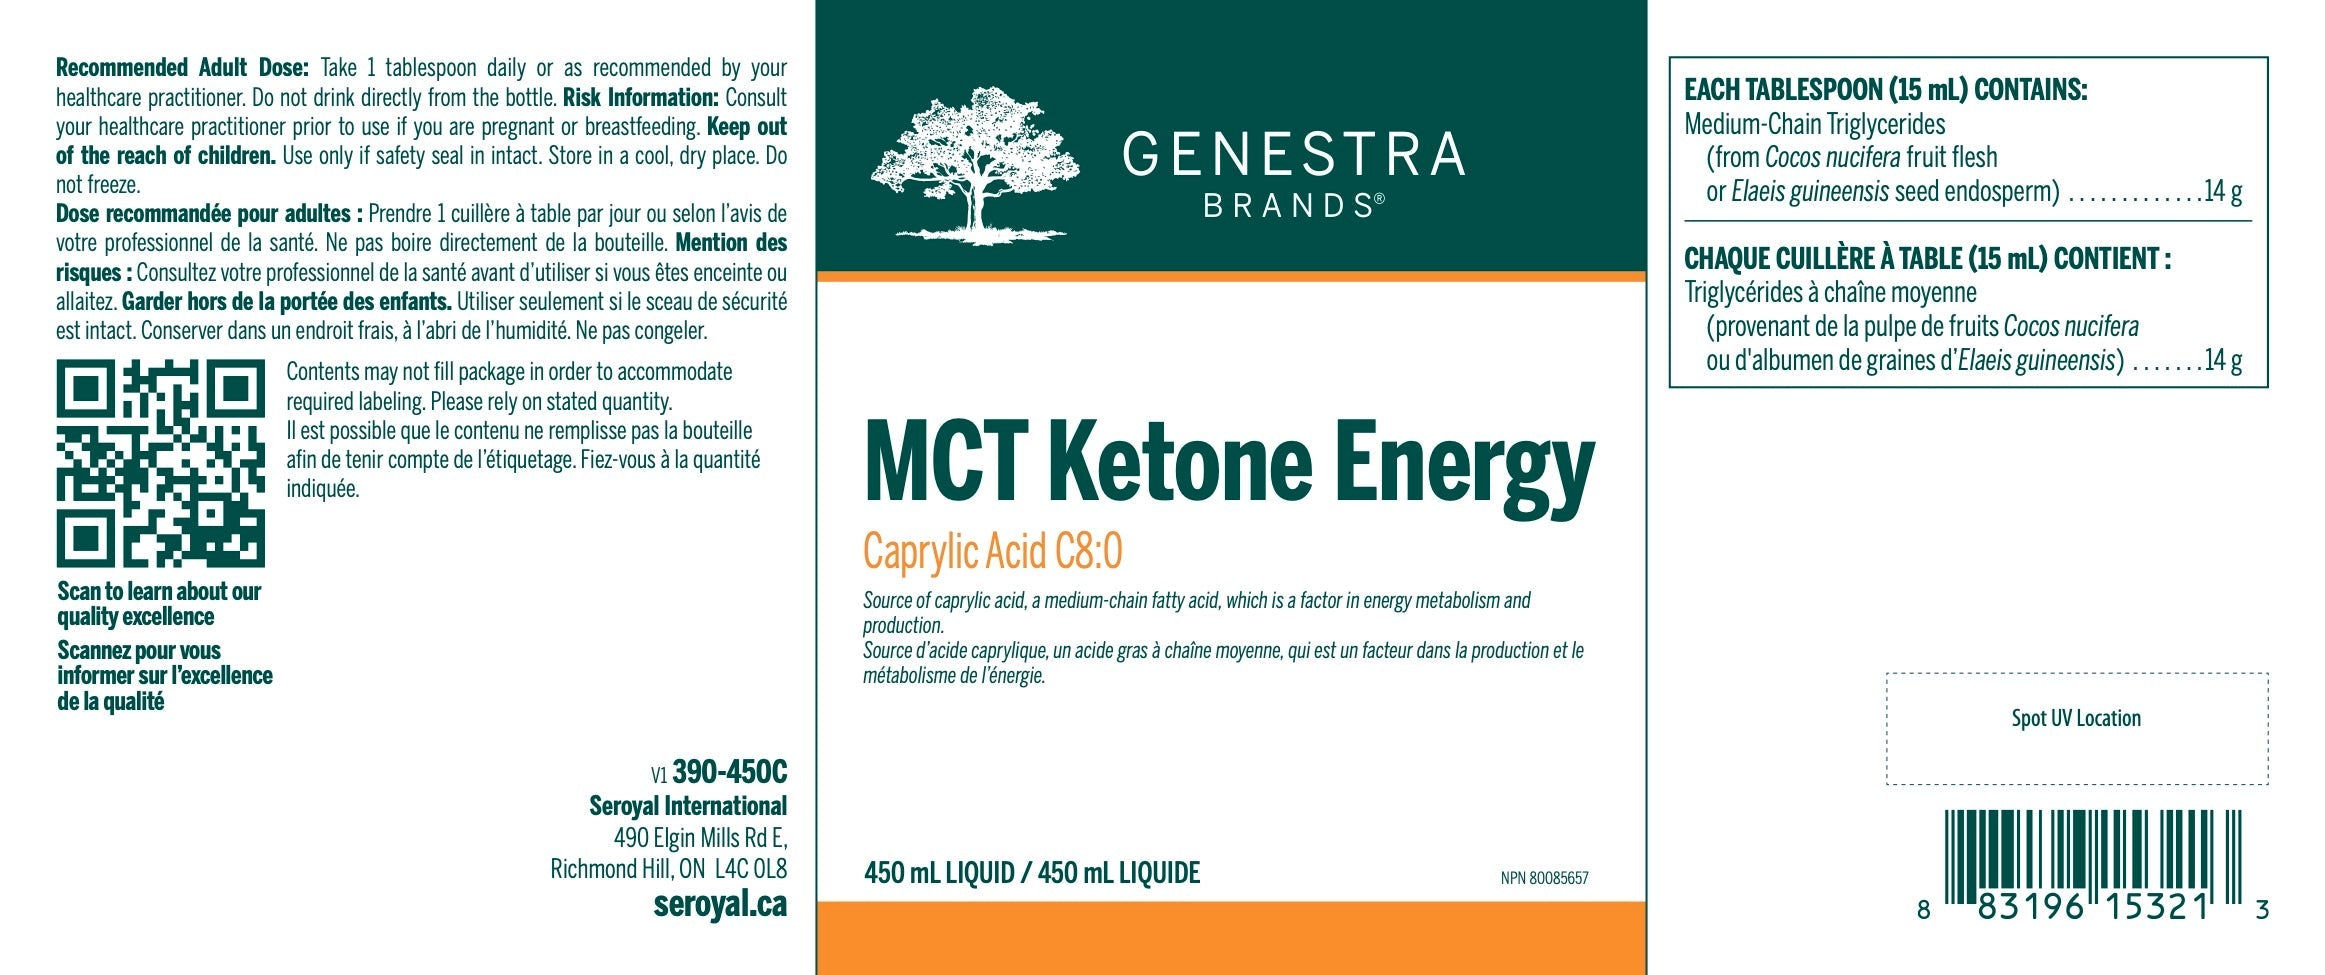 MCT Ketone Energy